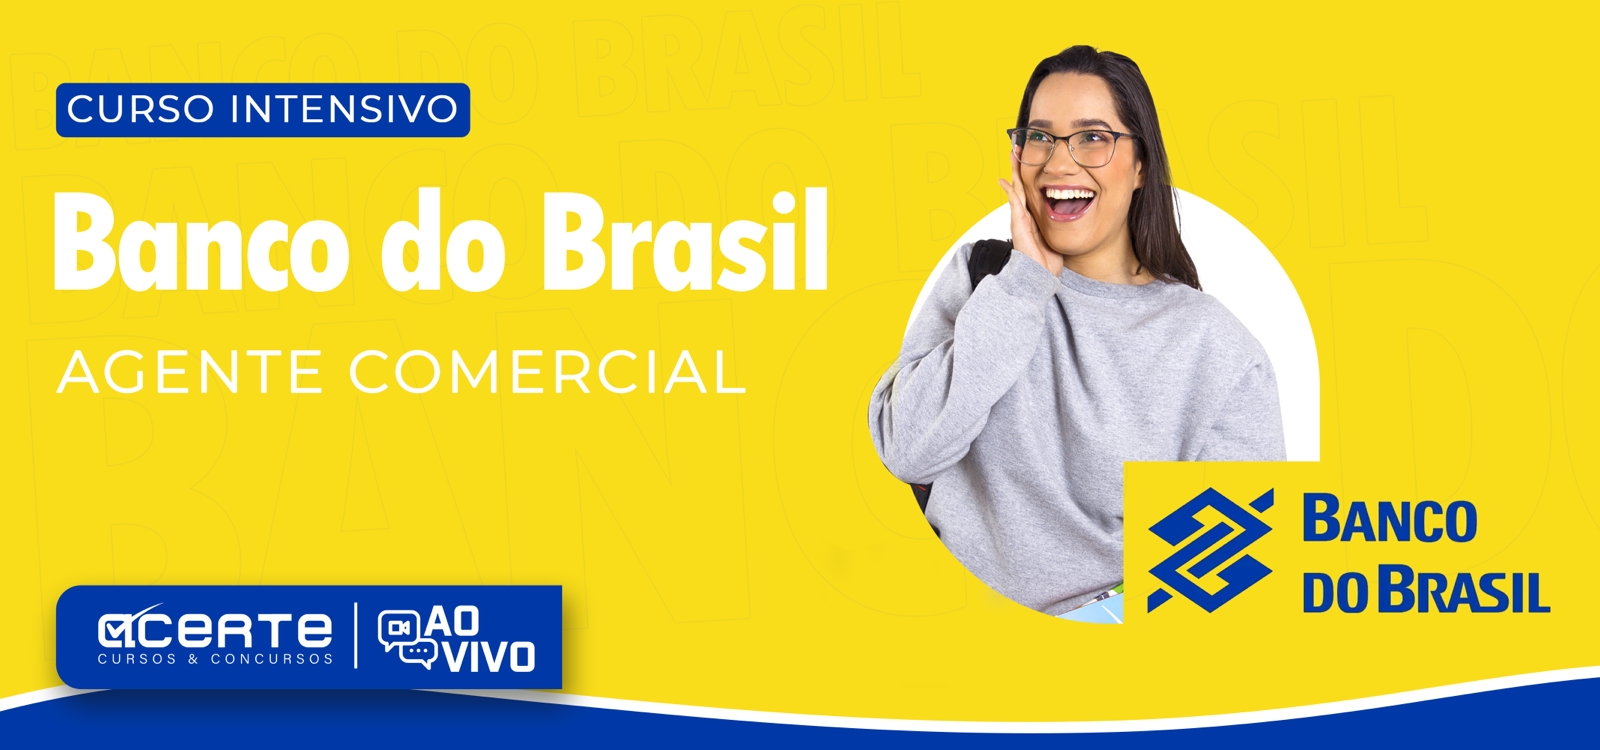 Banco do Brasil - Escriturário - Agente Comercial - AO VIVO - Edital Publicado